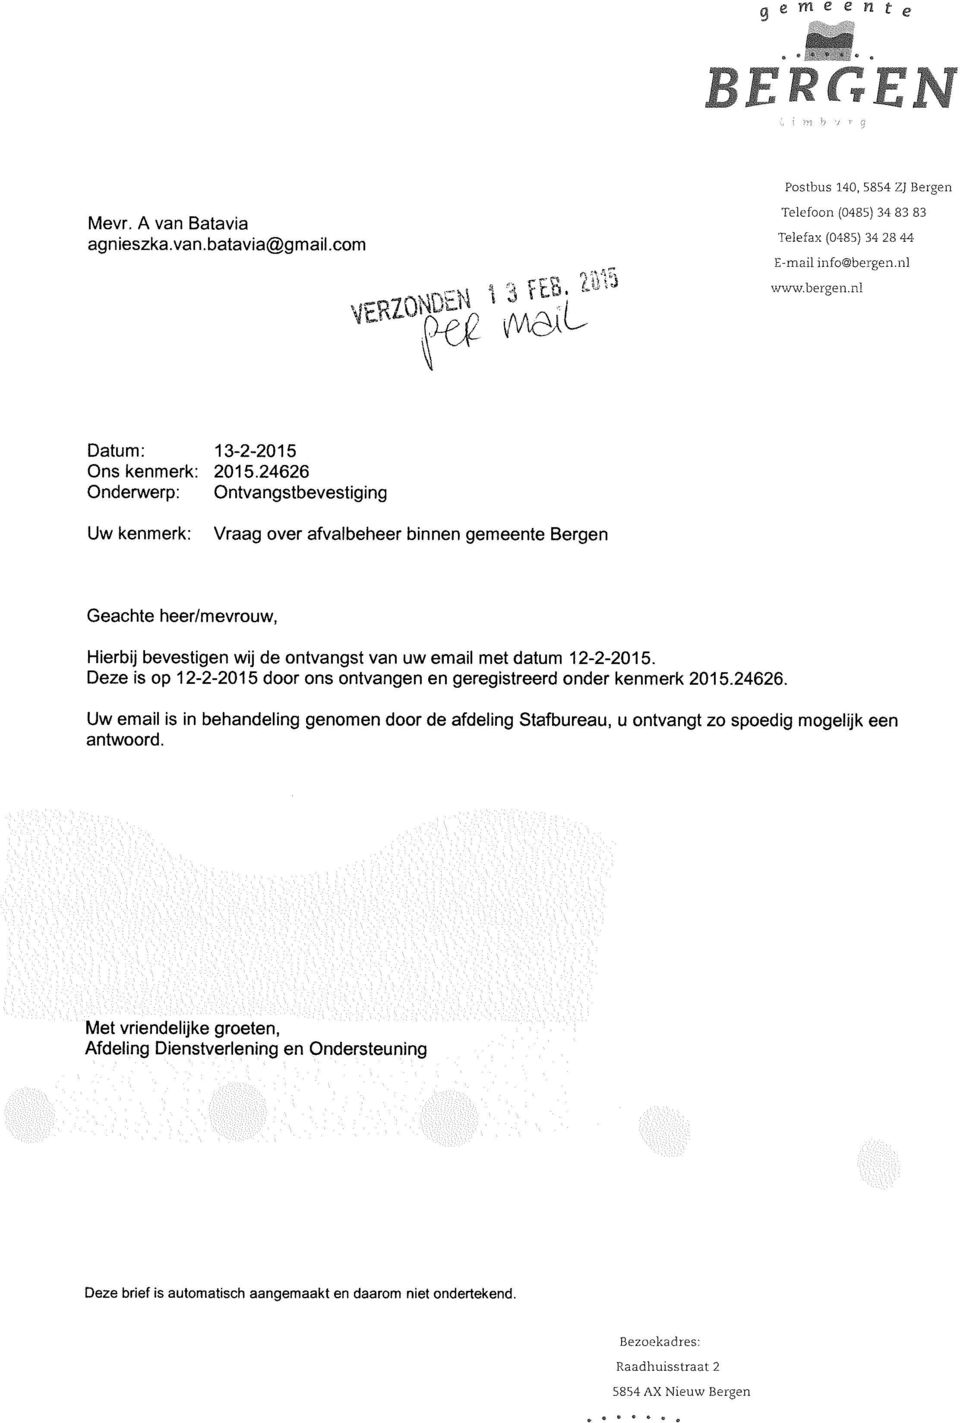 24626 Onderwerp: Ontvangstbevestiging Uw kenmerk: Vraag over afvalbeheer binnen gemeente Bergen Geachte heer/mevrouw, Hierbij bevestigen wij de ontvangst van uw email met datum 12-2-2015.